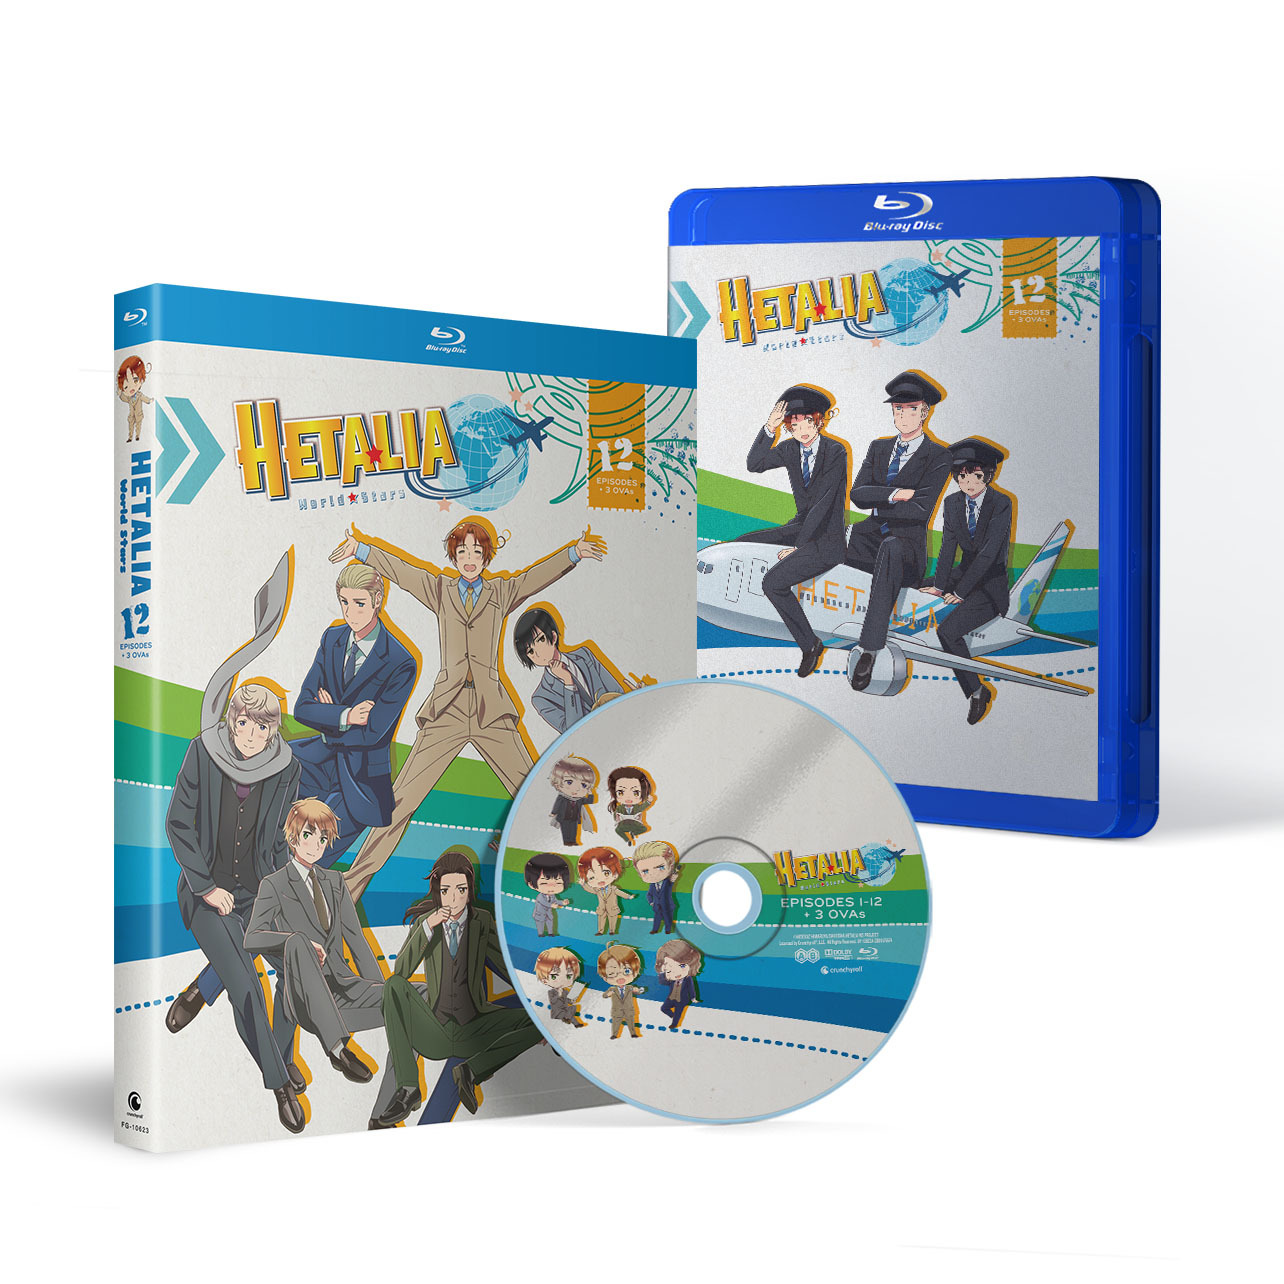 Hetalia: World Stars Blu-ray Box Art